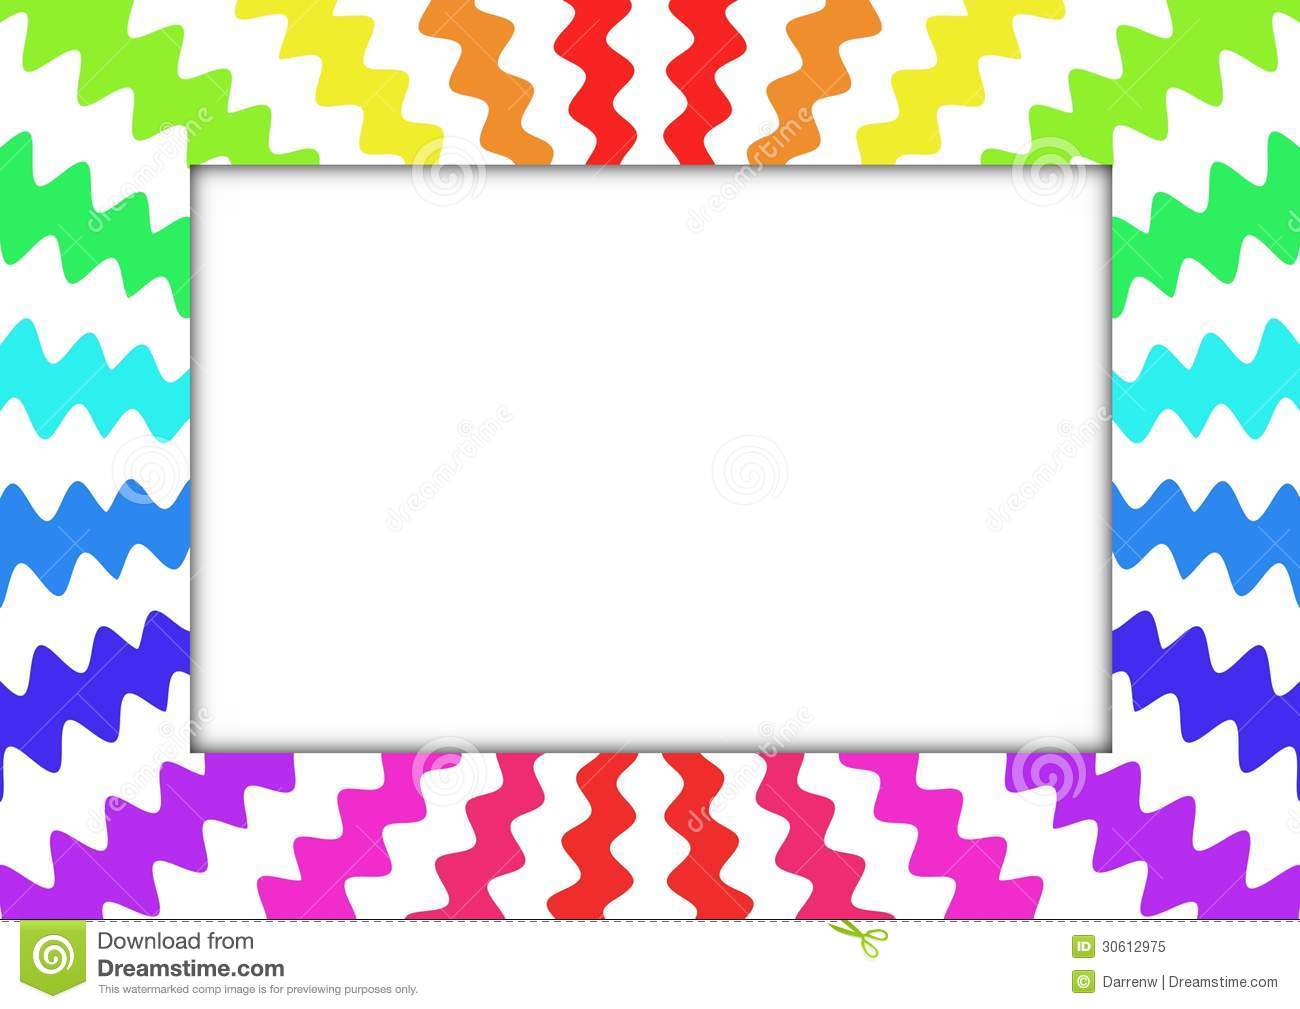 Zig Zag Rainbow Frame Royalty Free Stock Photo   Image  30612975